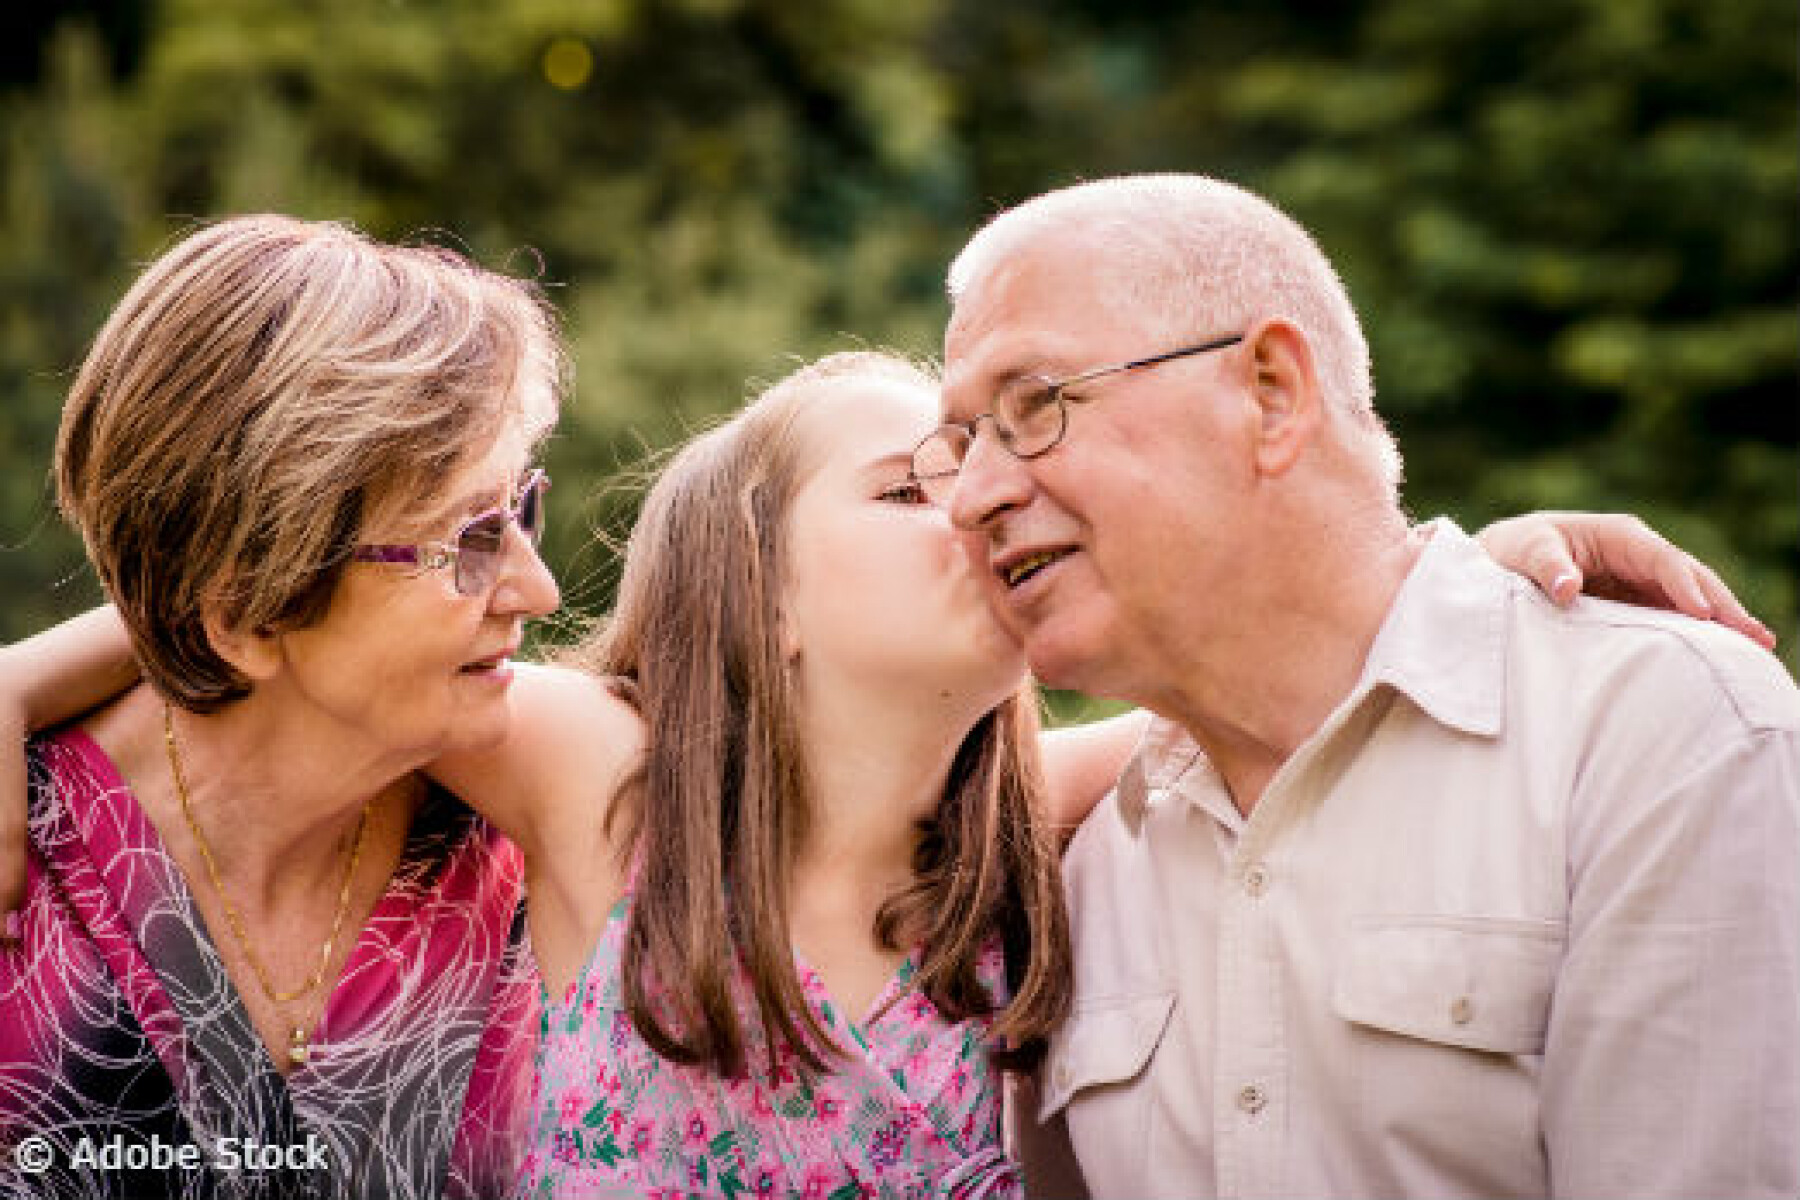 Grands-parents: pourquoi êtes-vous si importants pour vos petits-enfants?   